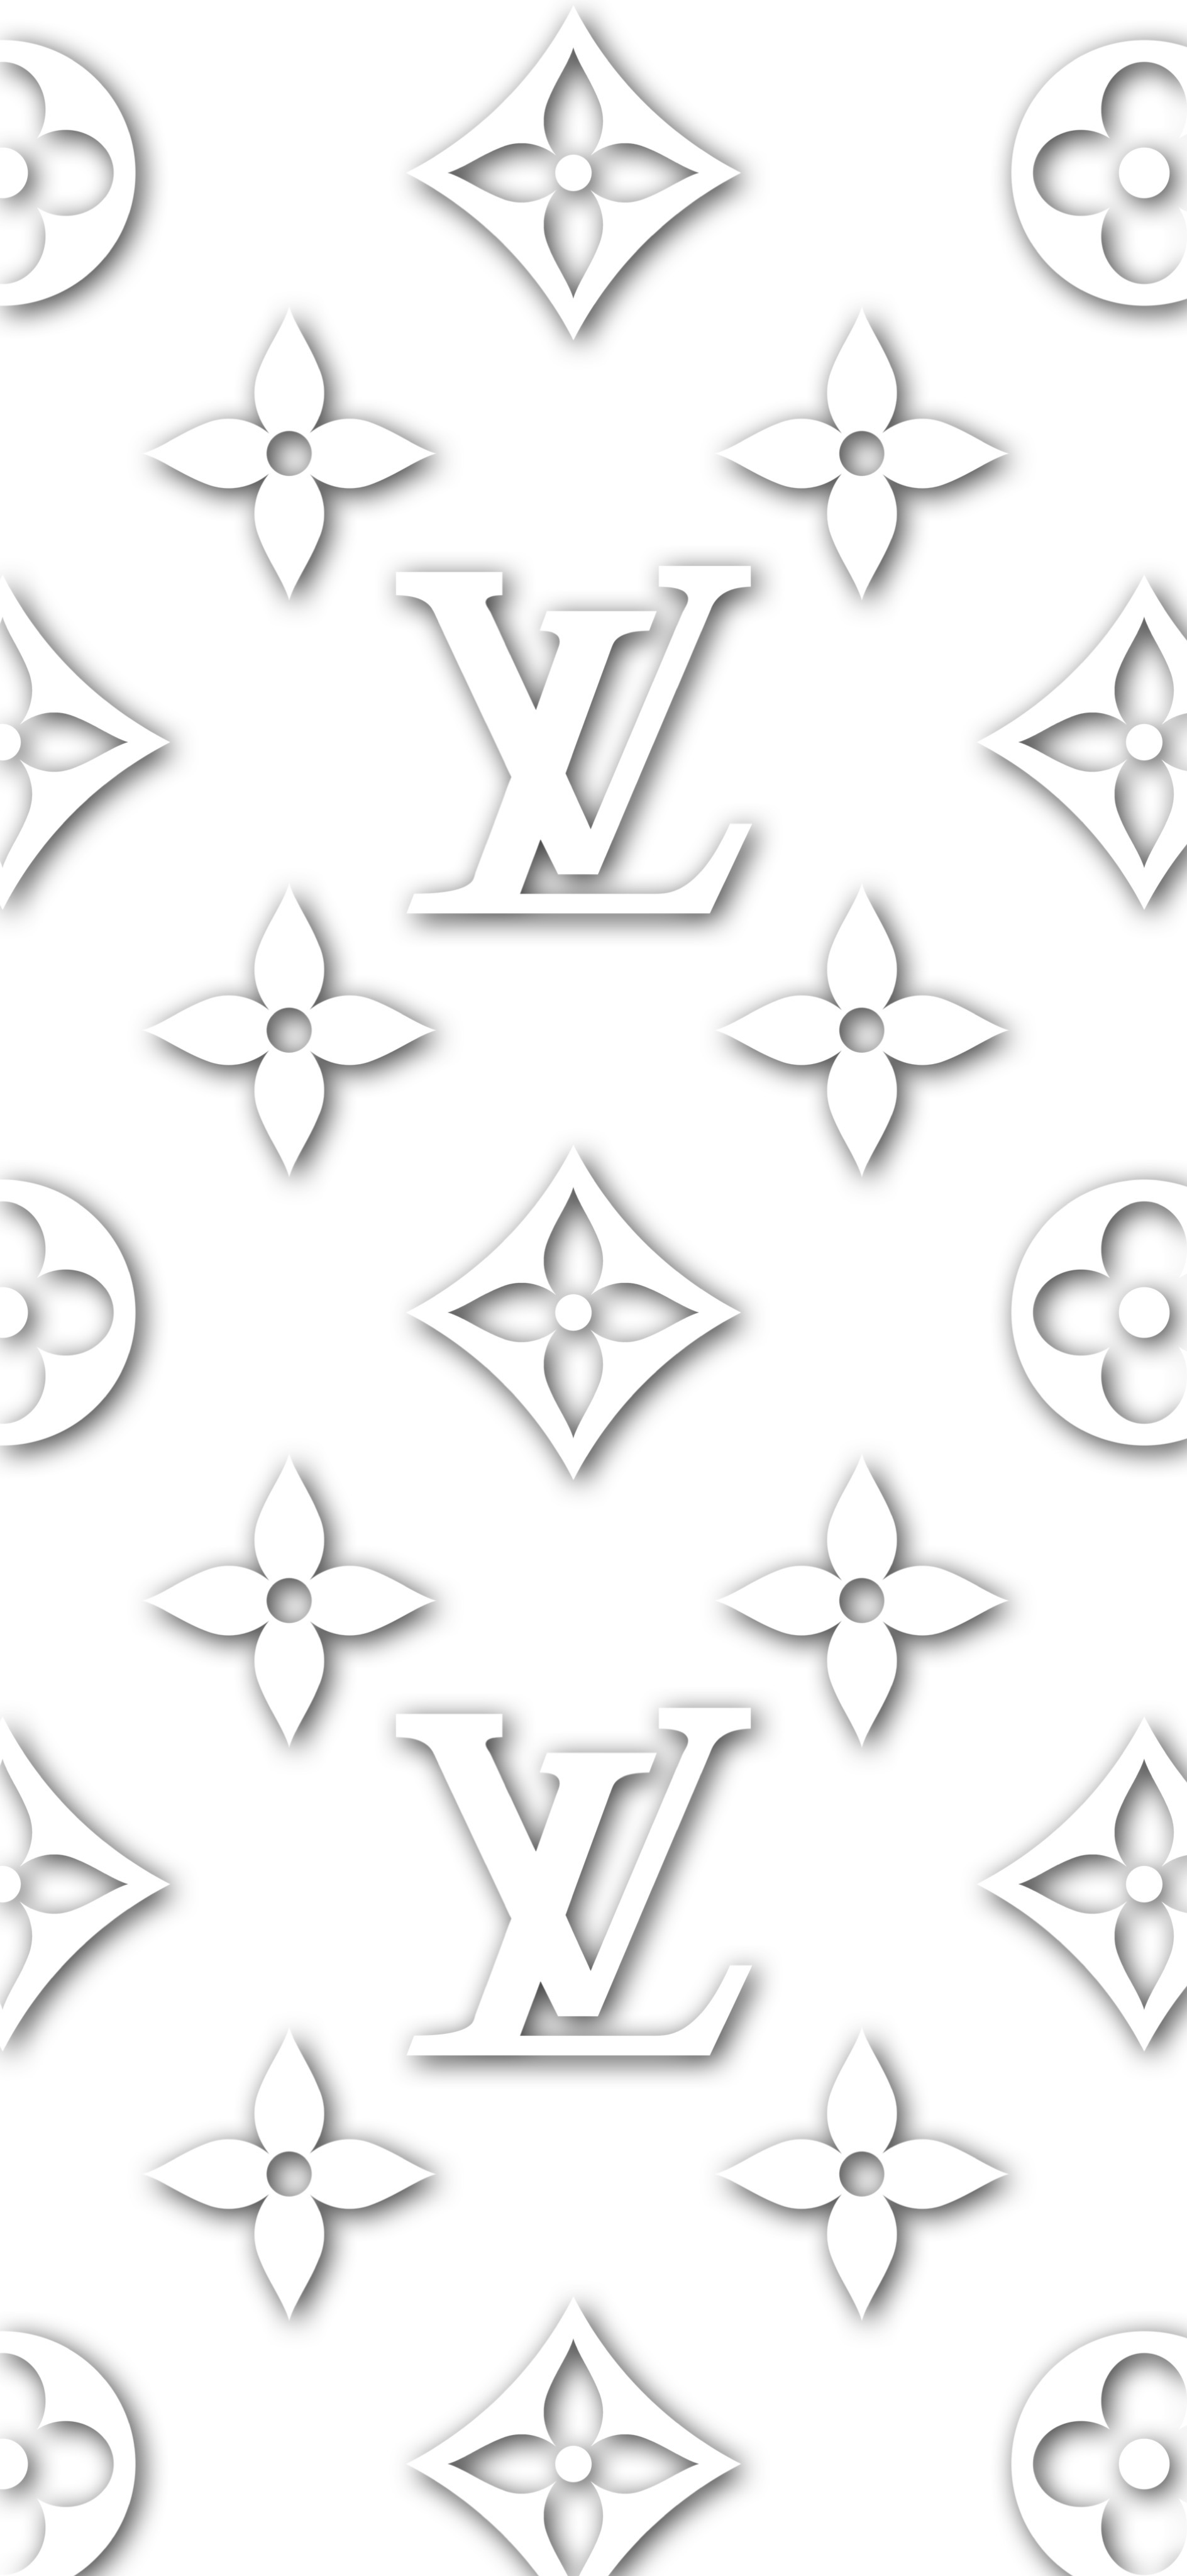 Download wallpapers Louis Vuitton carbon logo, 4k, grunge art